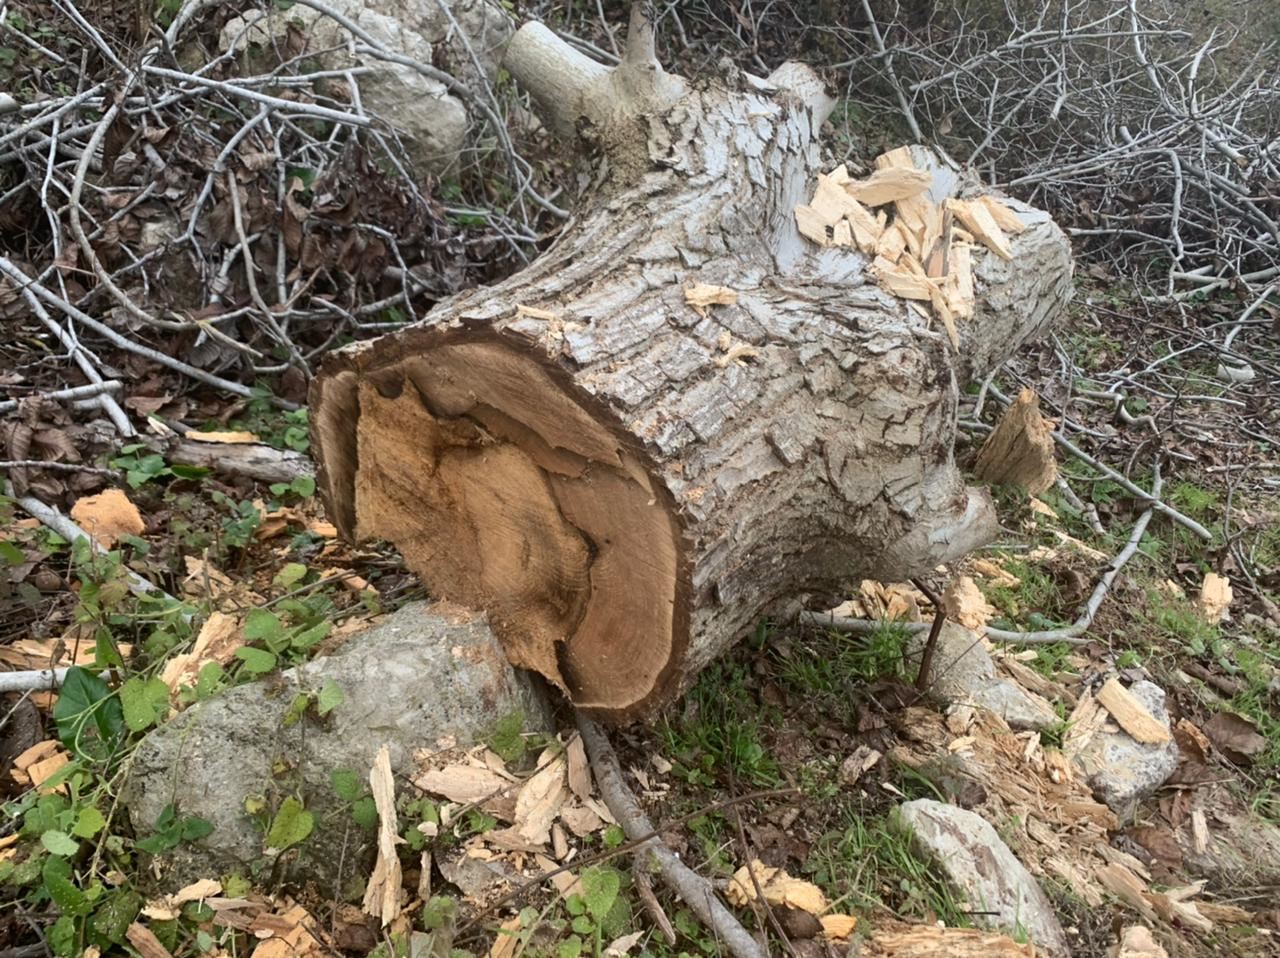 عمليات قطع الاشجار الحرجية في خراج بلدة القبيات مستمرة